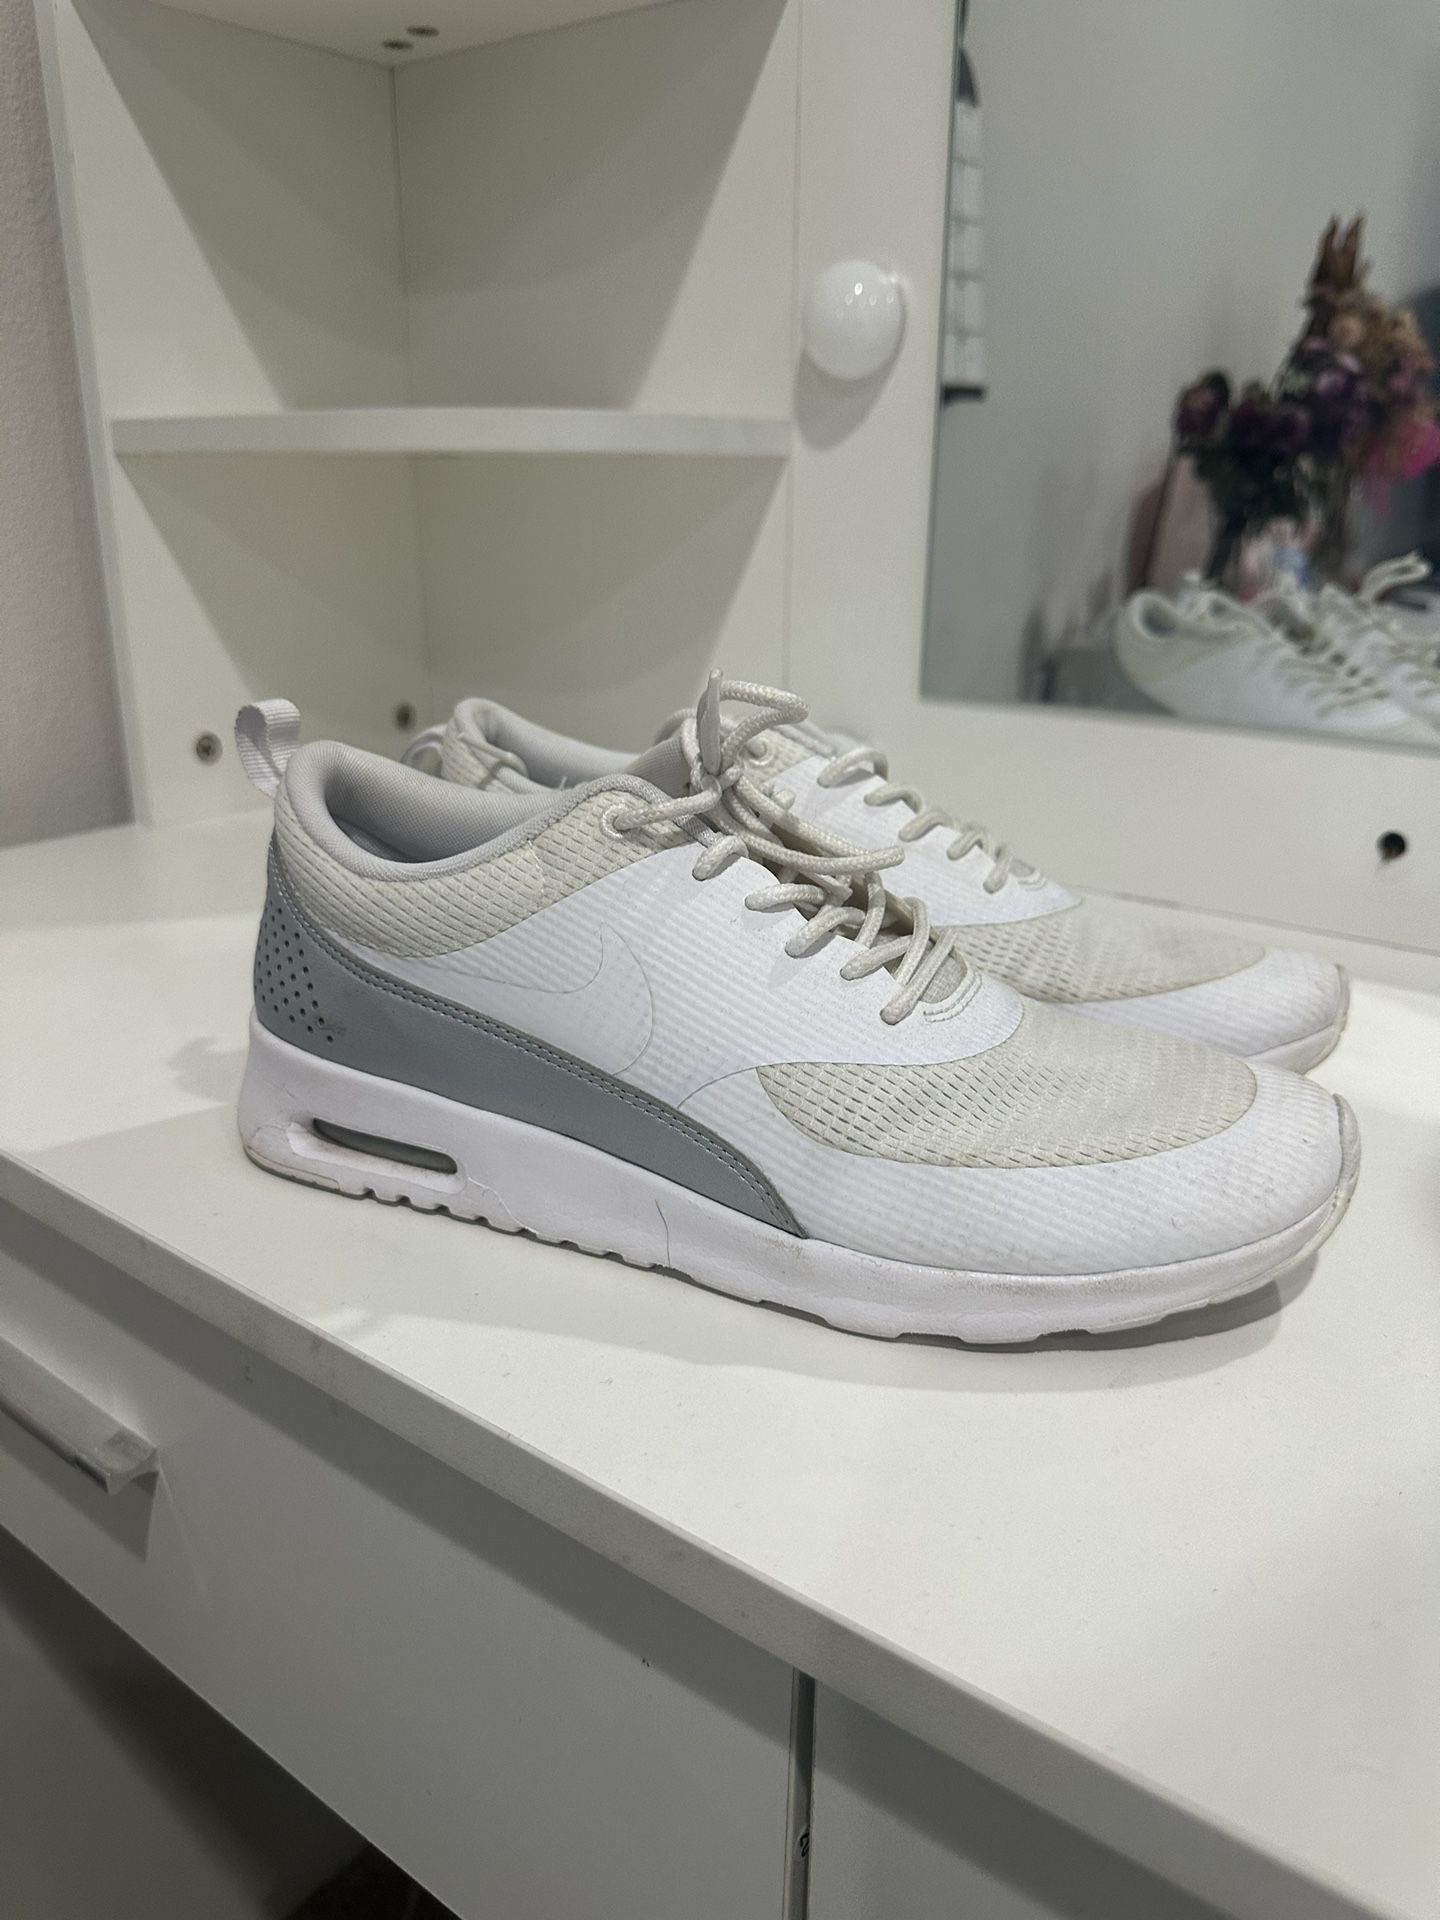 Women’s Nike training / running shoes - Size 9